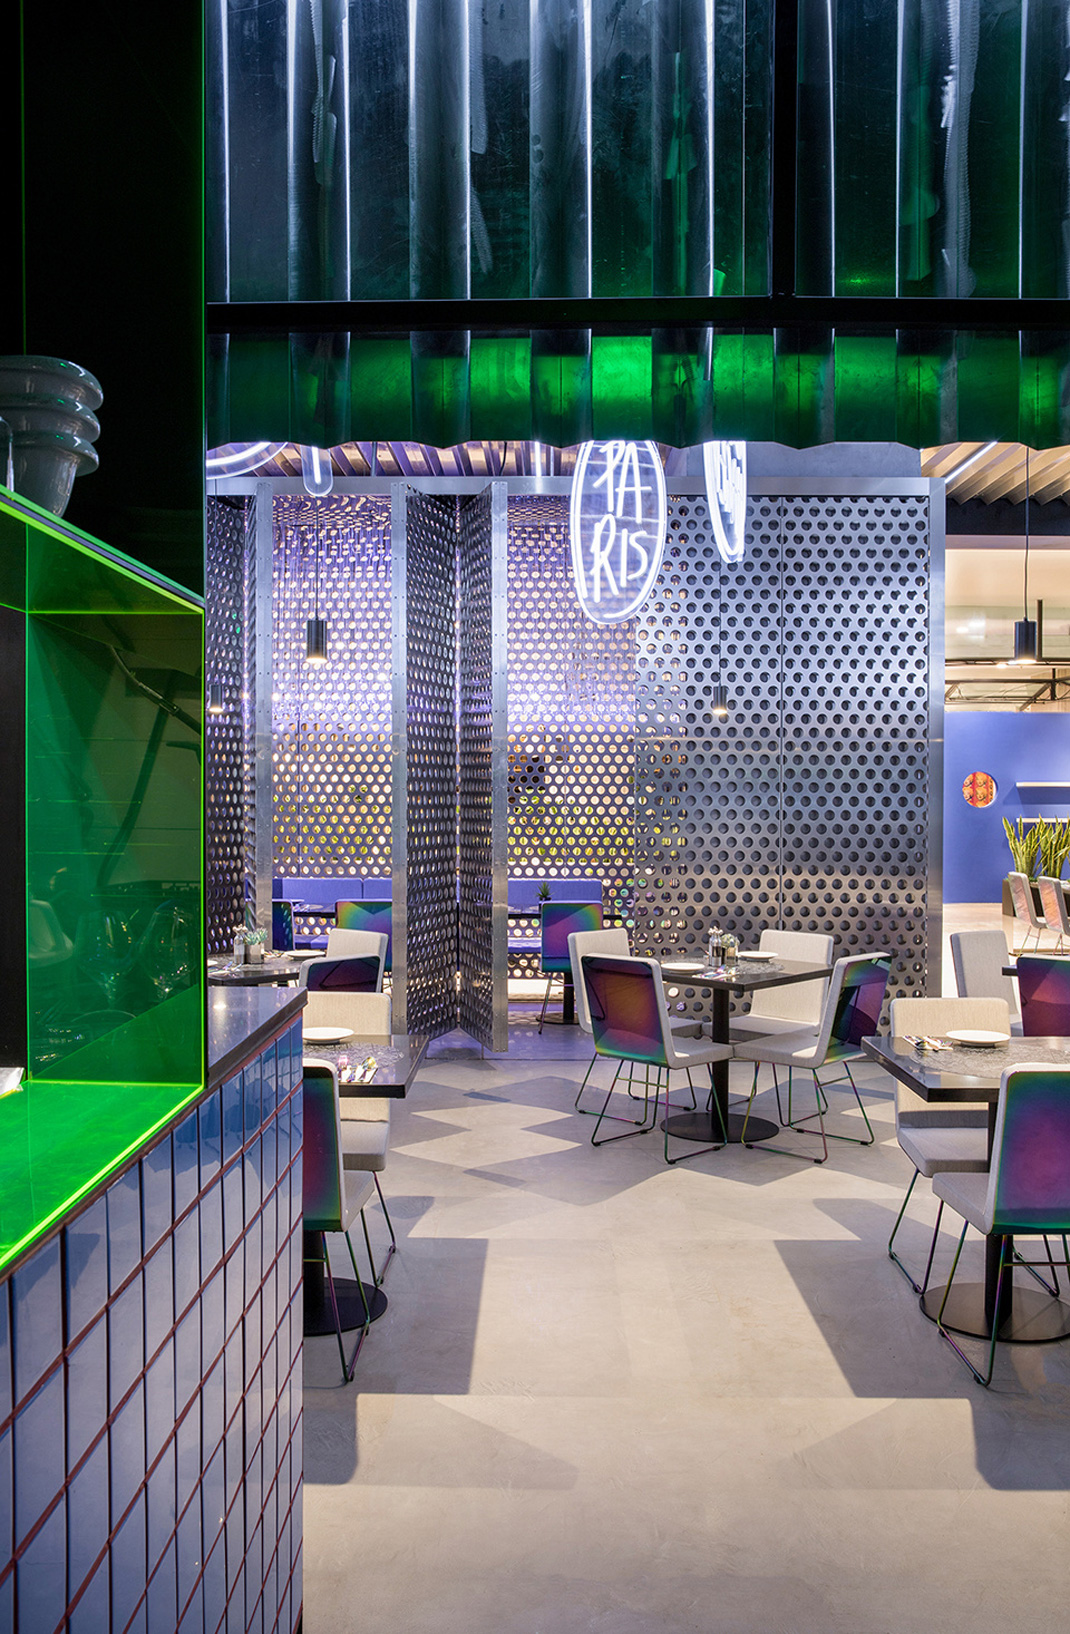 TIAGO SELECT餐厅北京 波纹天花板 瓷砖 霓虹灯 艺术装置 logo设计 VI设计 空间设计 视觉餐饮